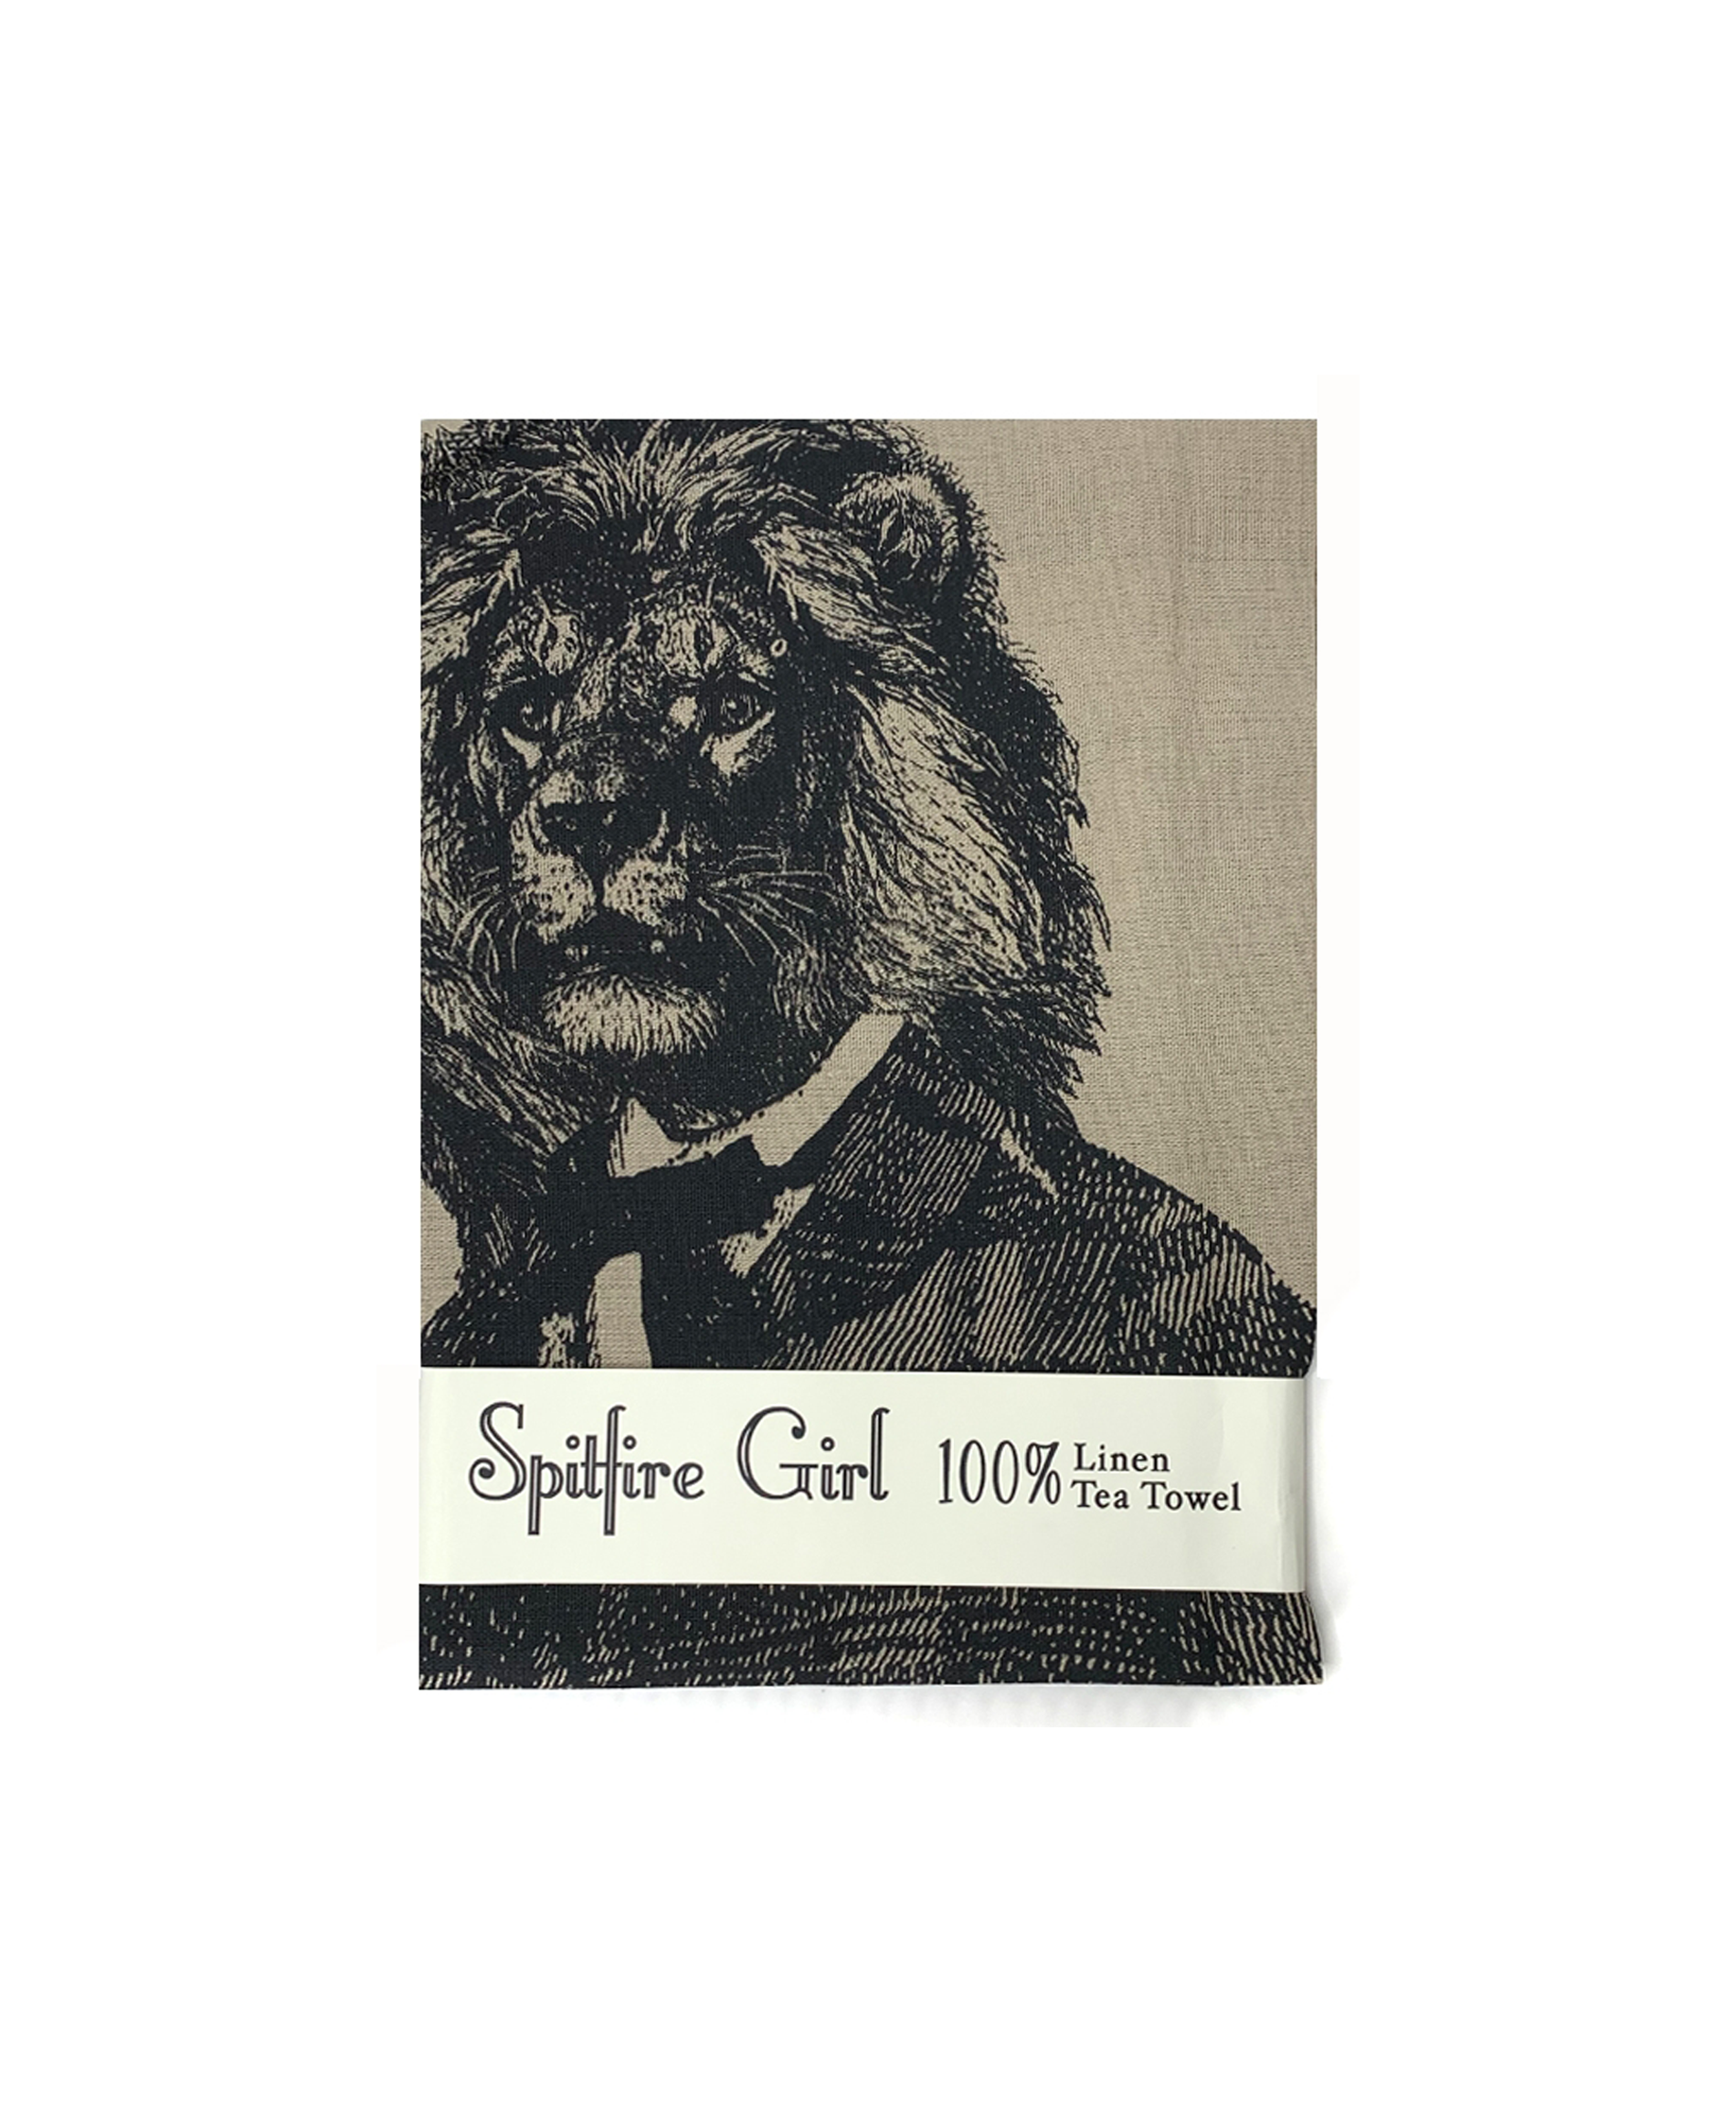 spitfire-girl-lion-beggar-tea-towel